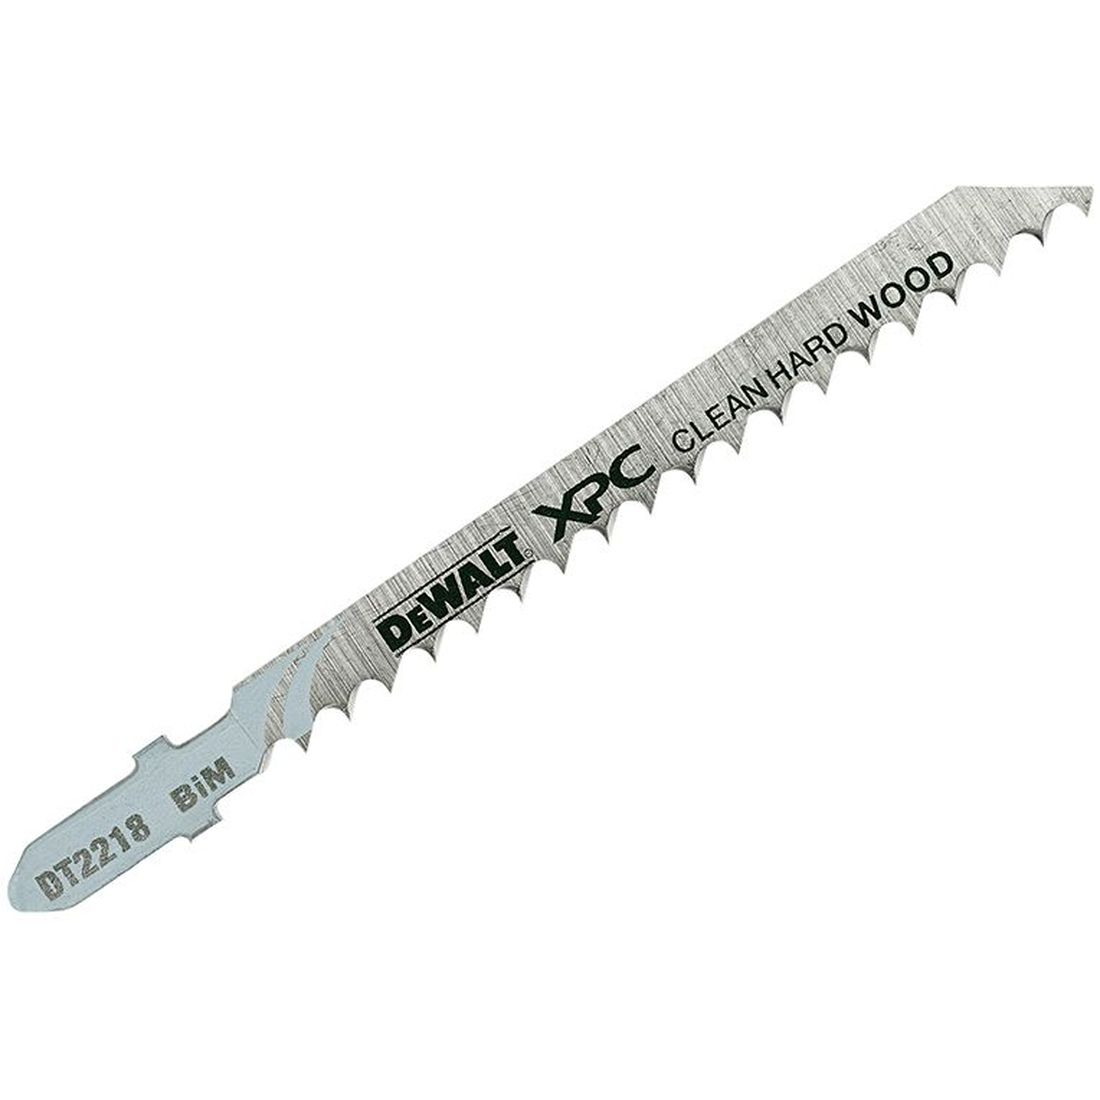 DEWALT XPC Bi-Metal Wood Jigsaw Blades Pack of 3 T101DF                                